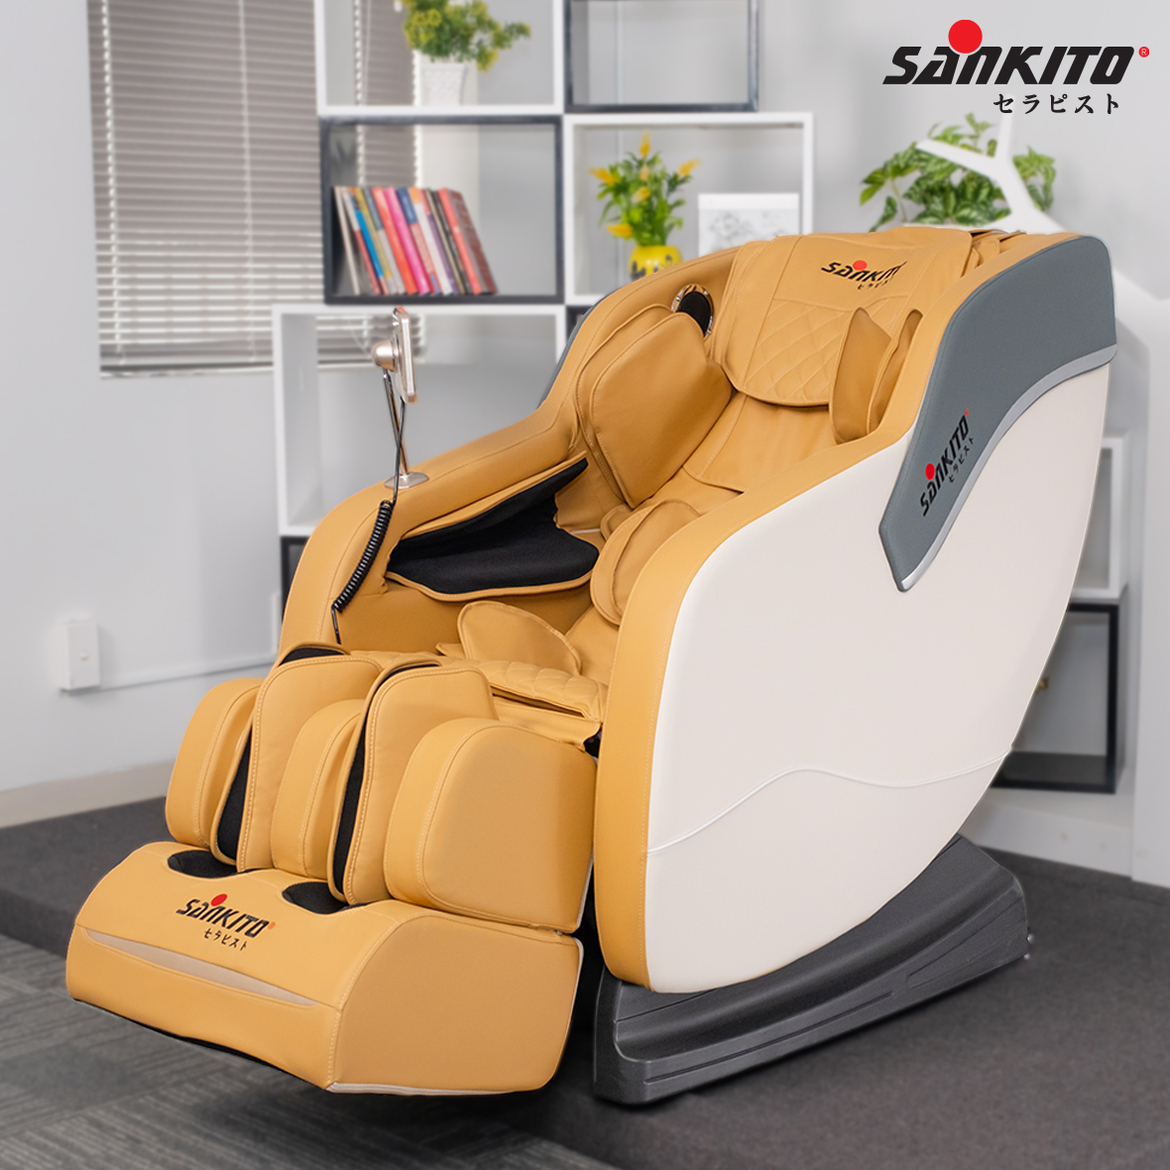 Phòng ngừa tuần hoàn máu kém bằng cách sử dụng ghế massage Sankito